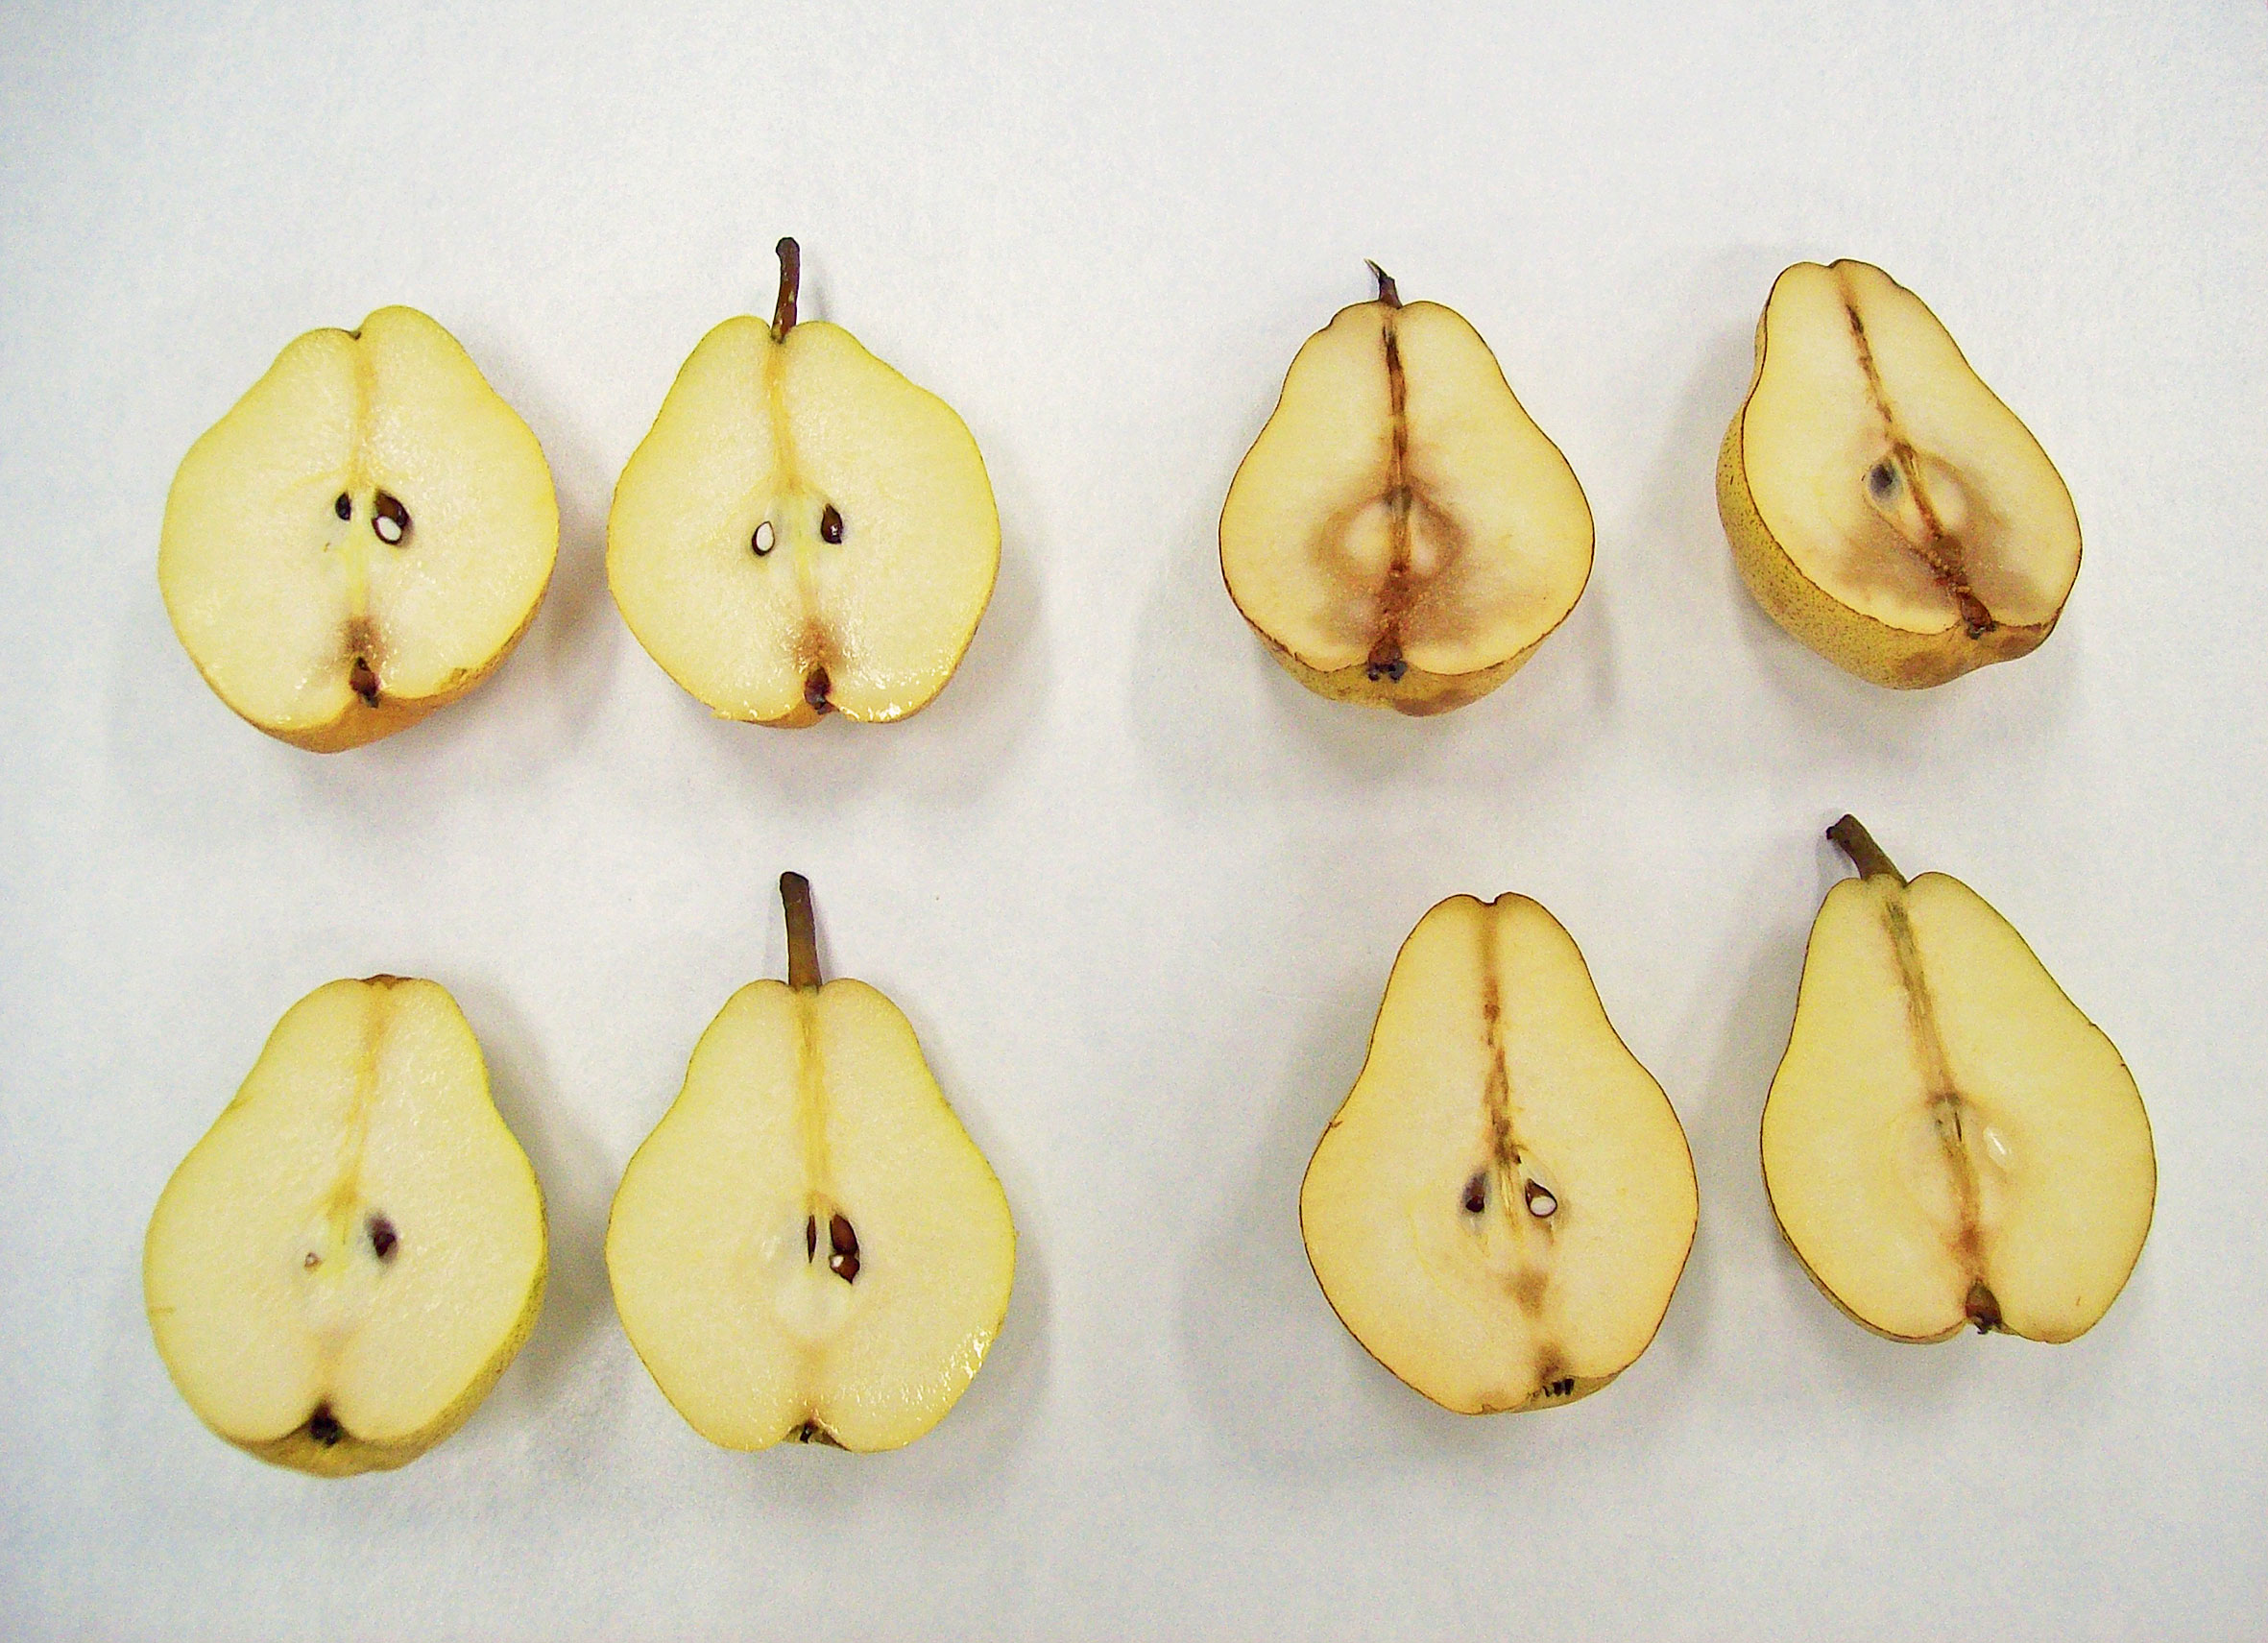 Effet du traitement au 1-MCP sur l’évolution de la qualité des poires durant l’entreposage et l’affinage